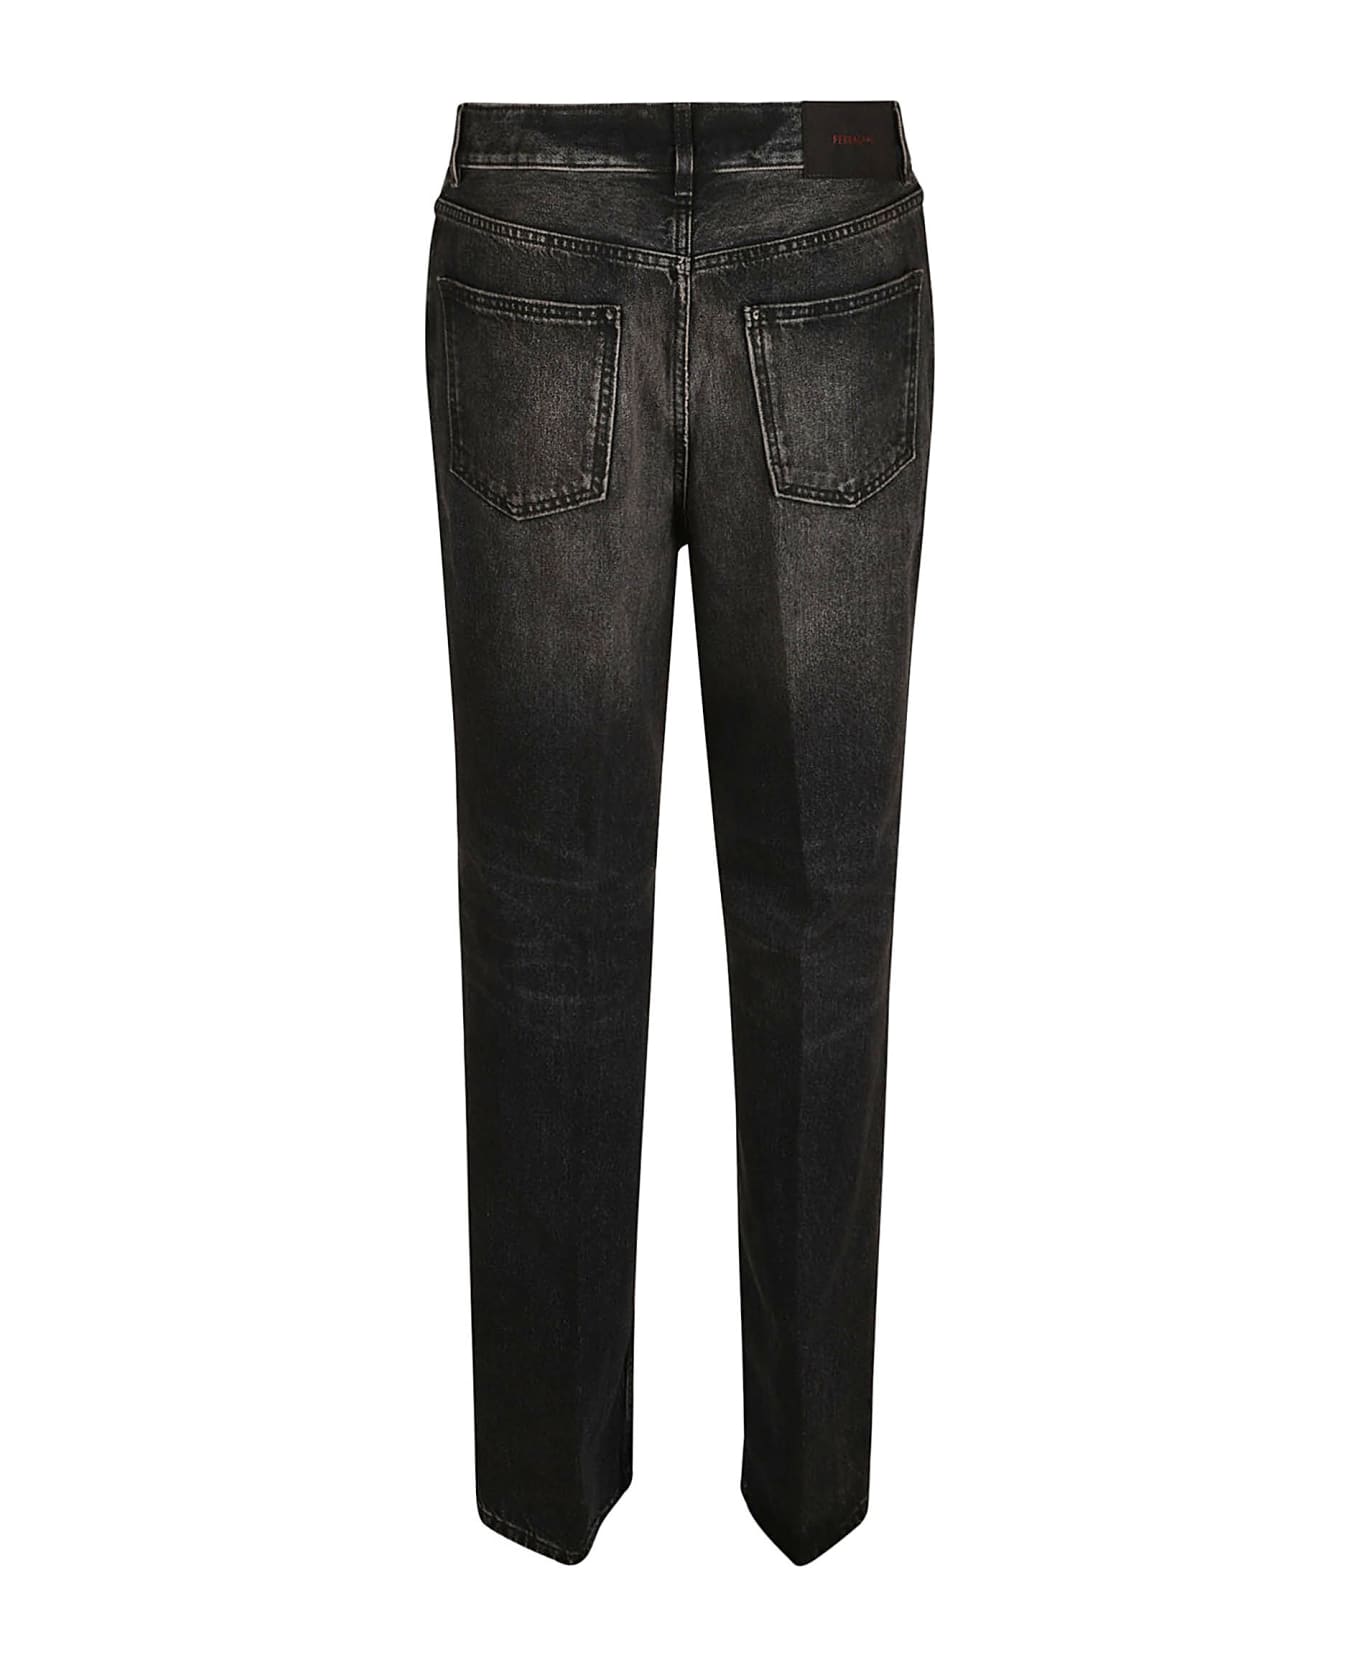 Ferragamo Buttoned Classic Jeans - Black